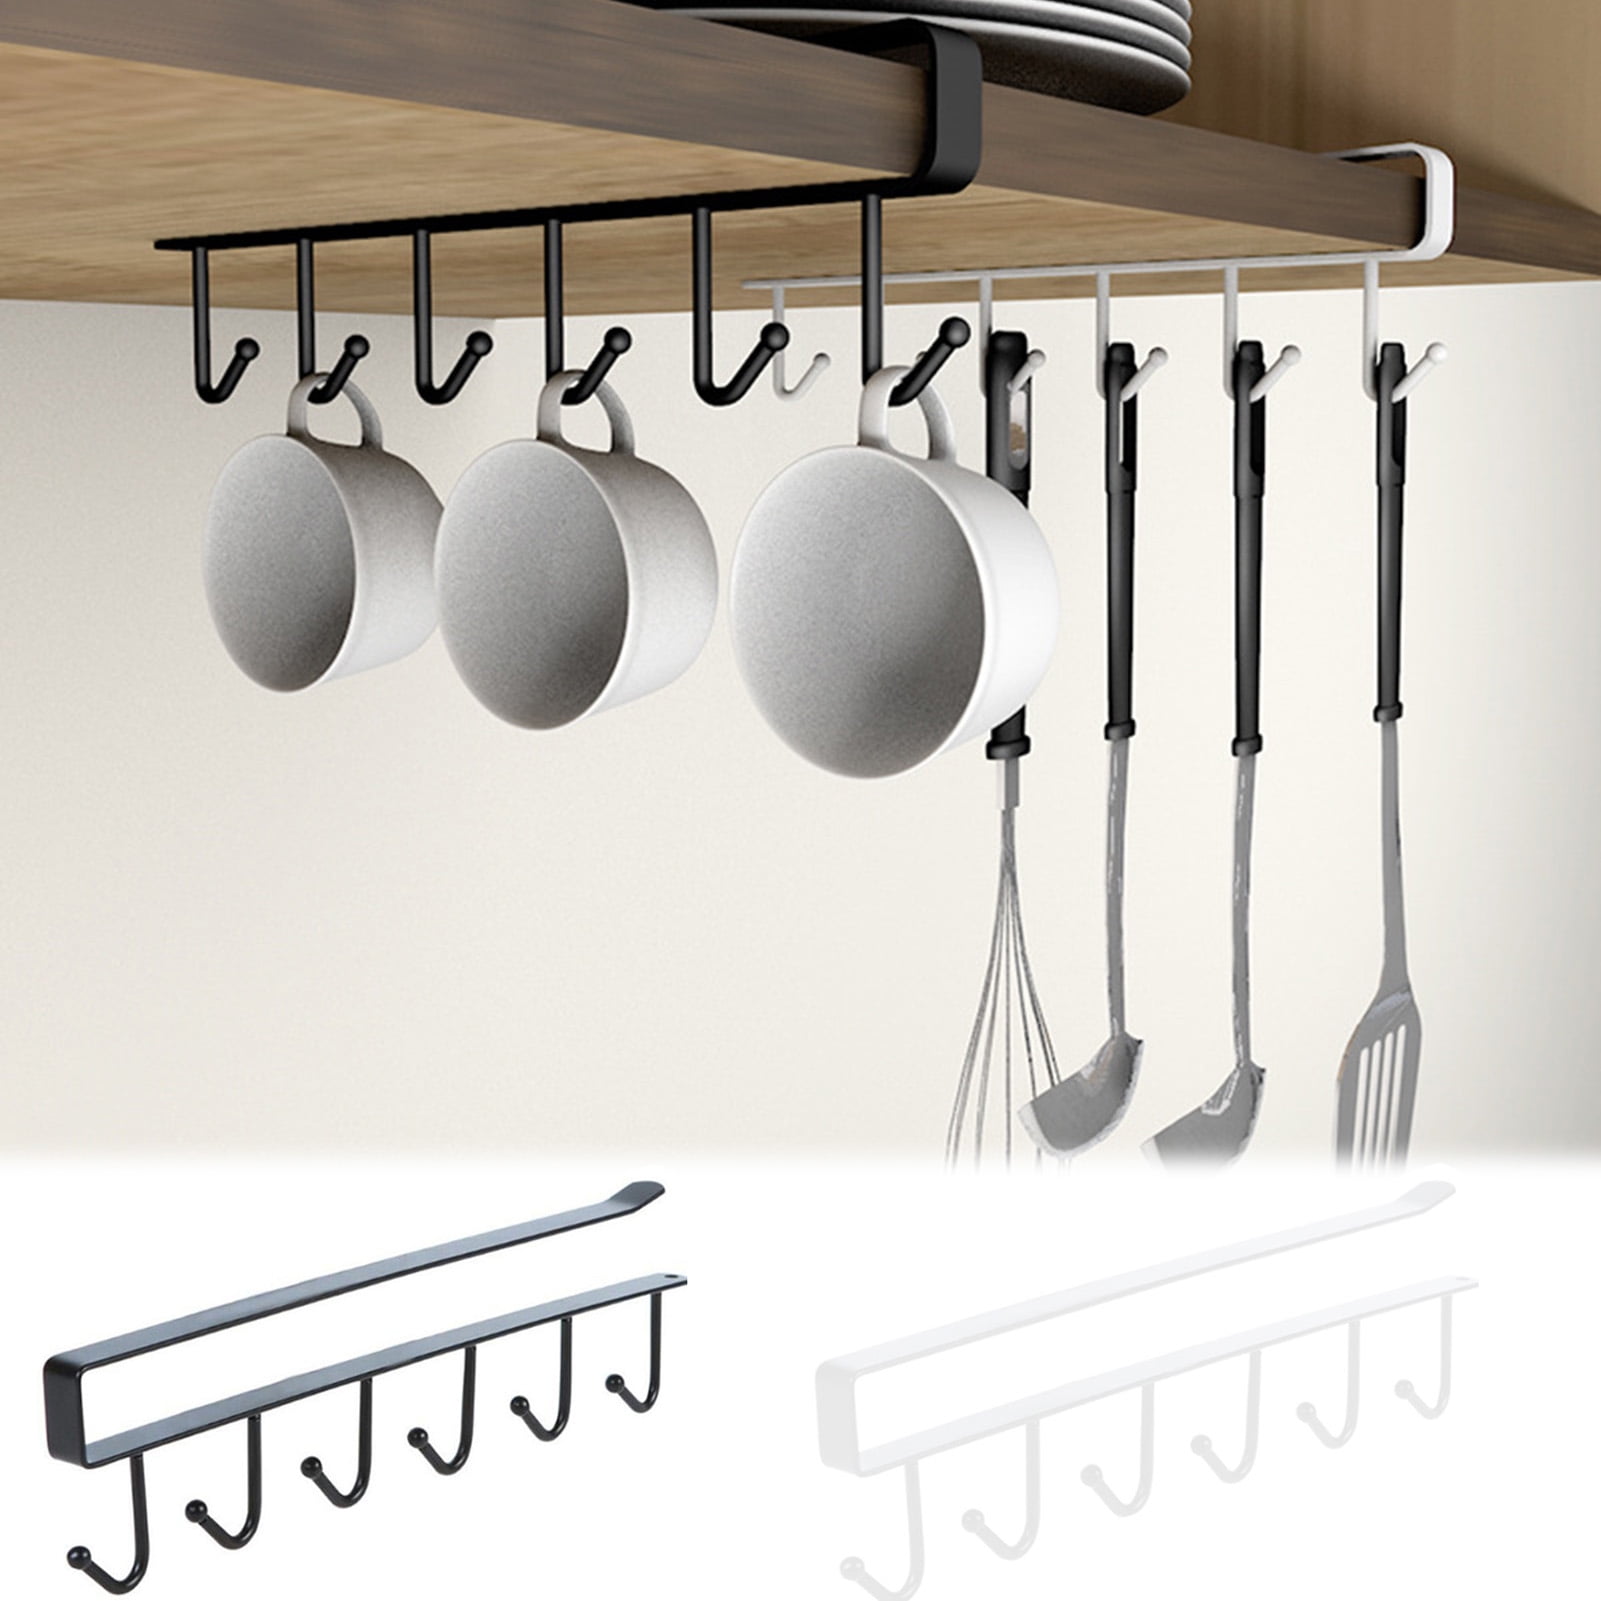 Kitchen Utensil Holder Tools Spoon Rack Multi-function O2I0